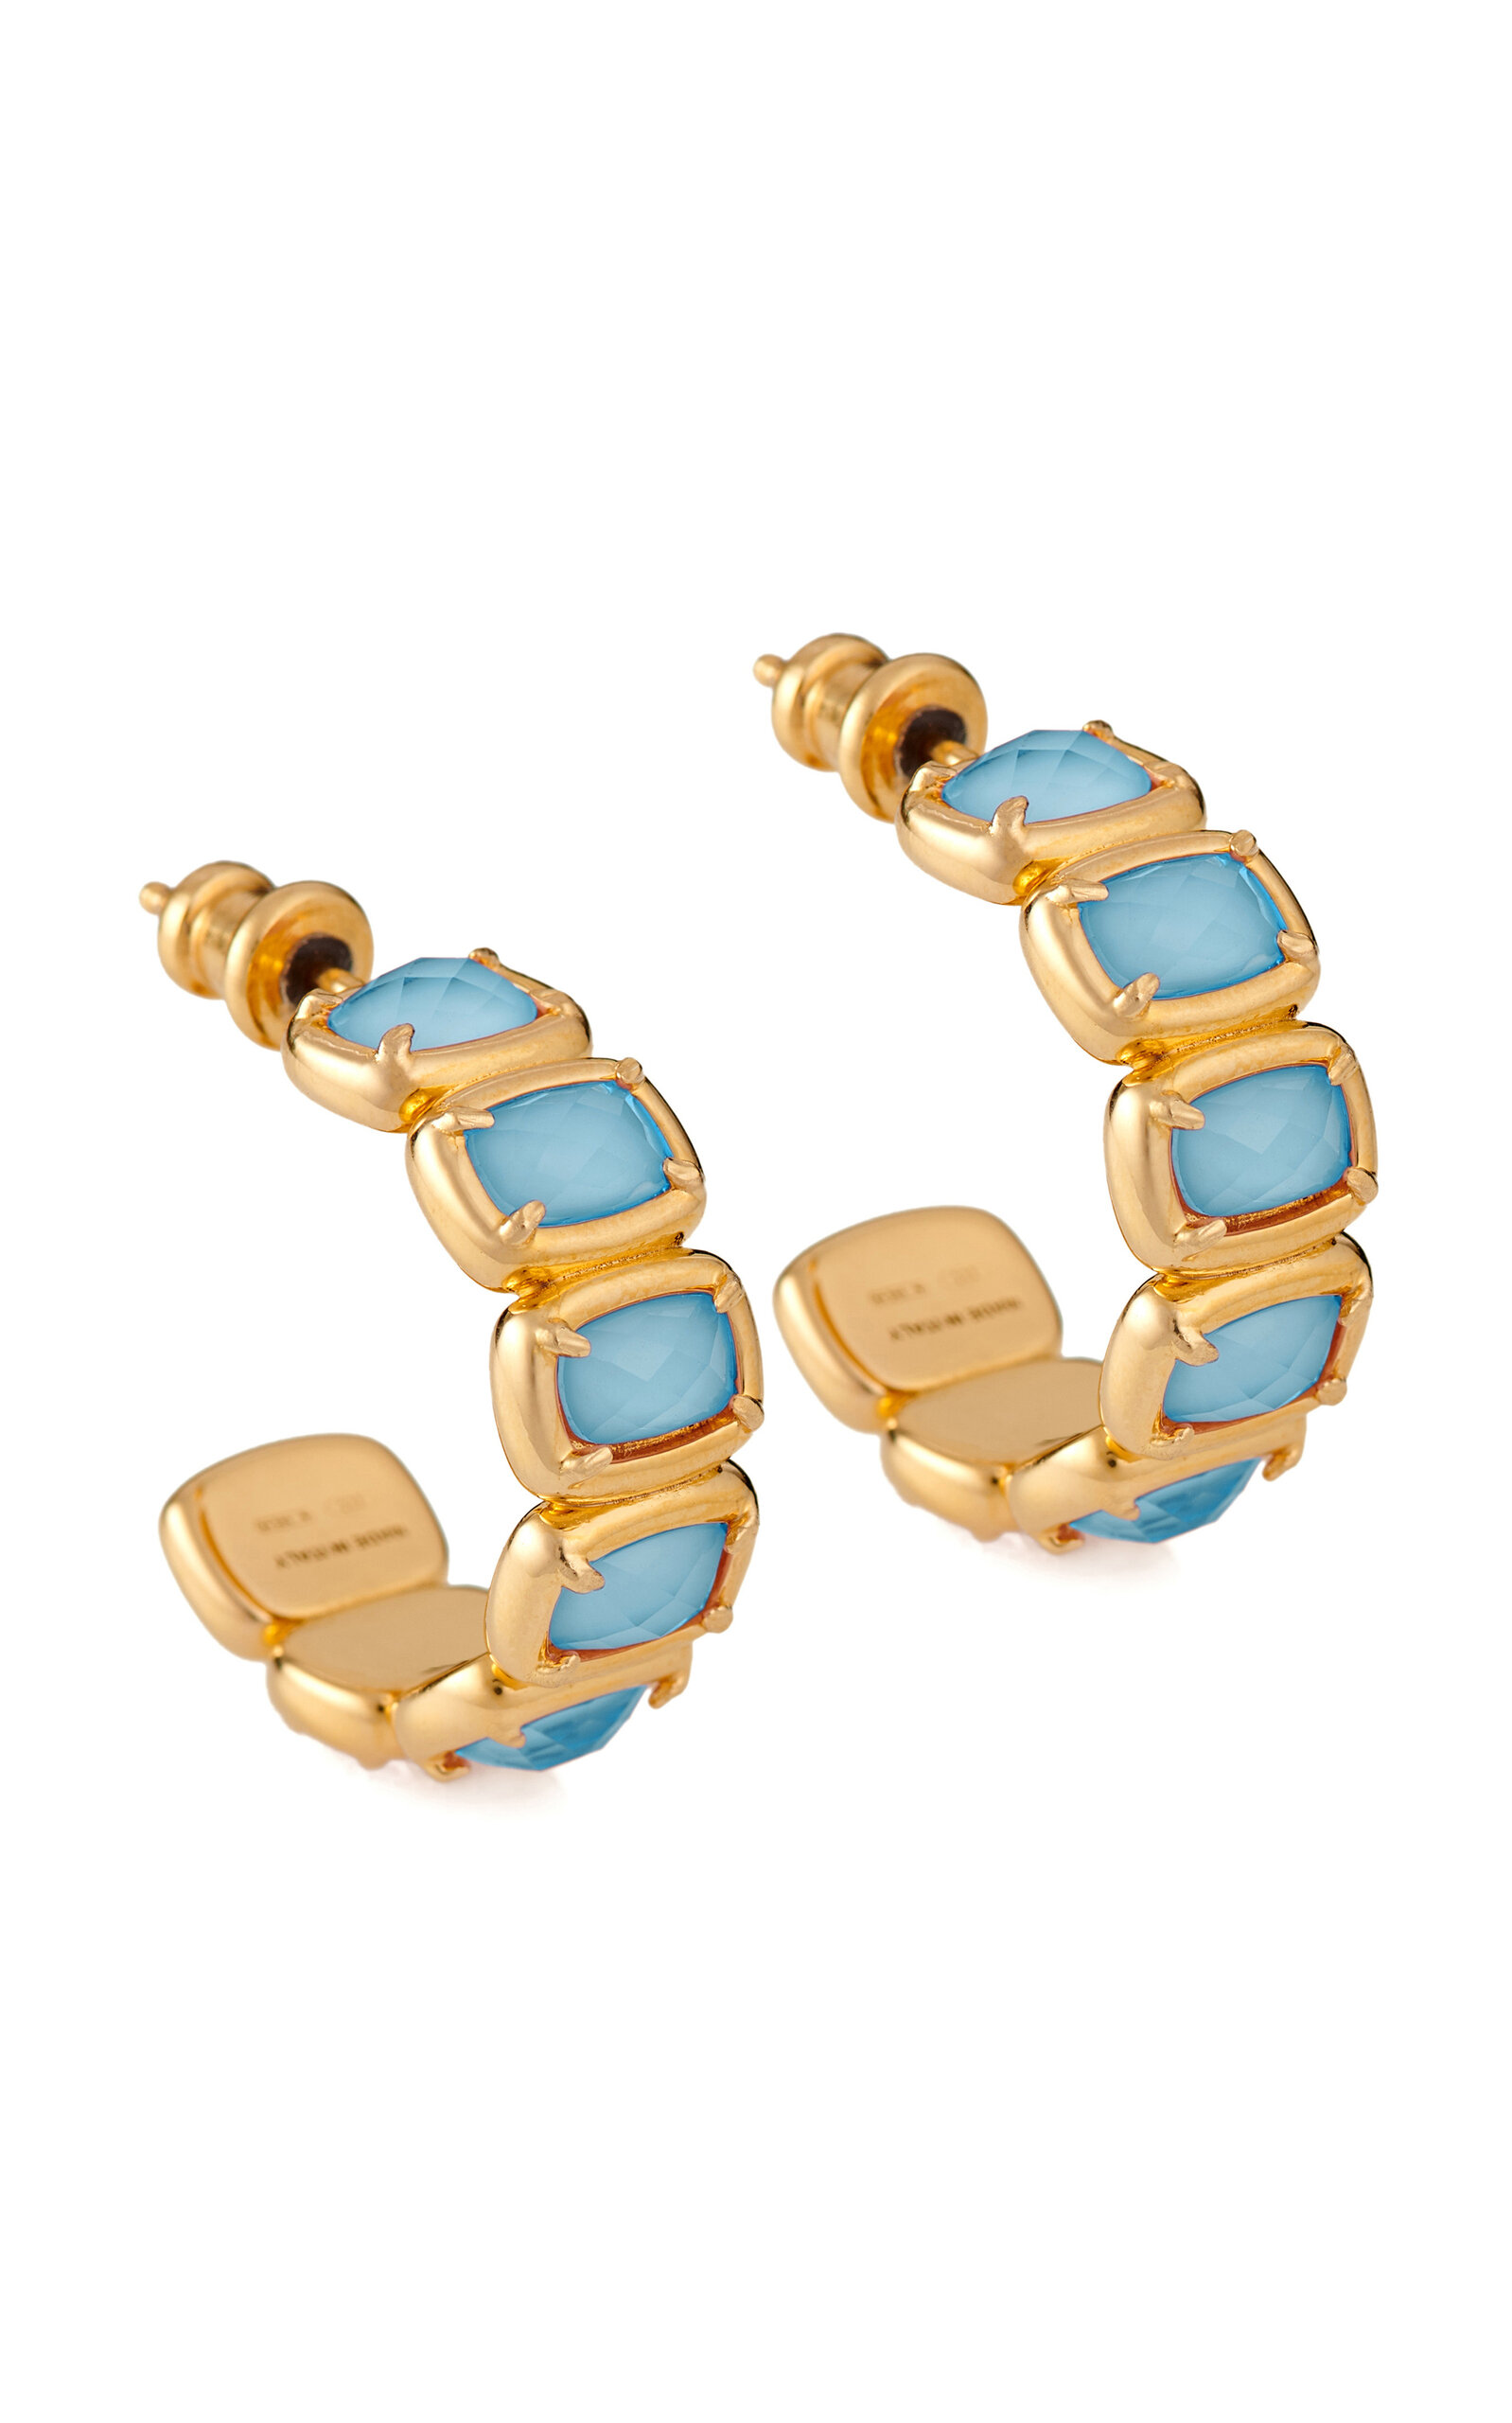 IVI Women's Small Toy 18k Gold-Plated Glass Stone Enamel Earrings